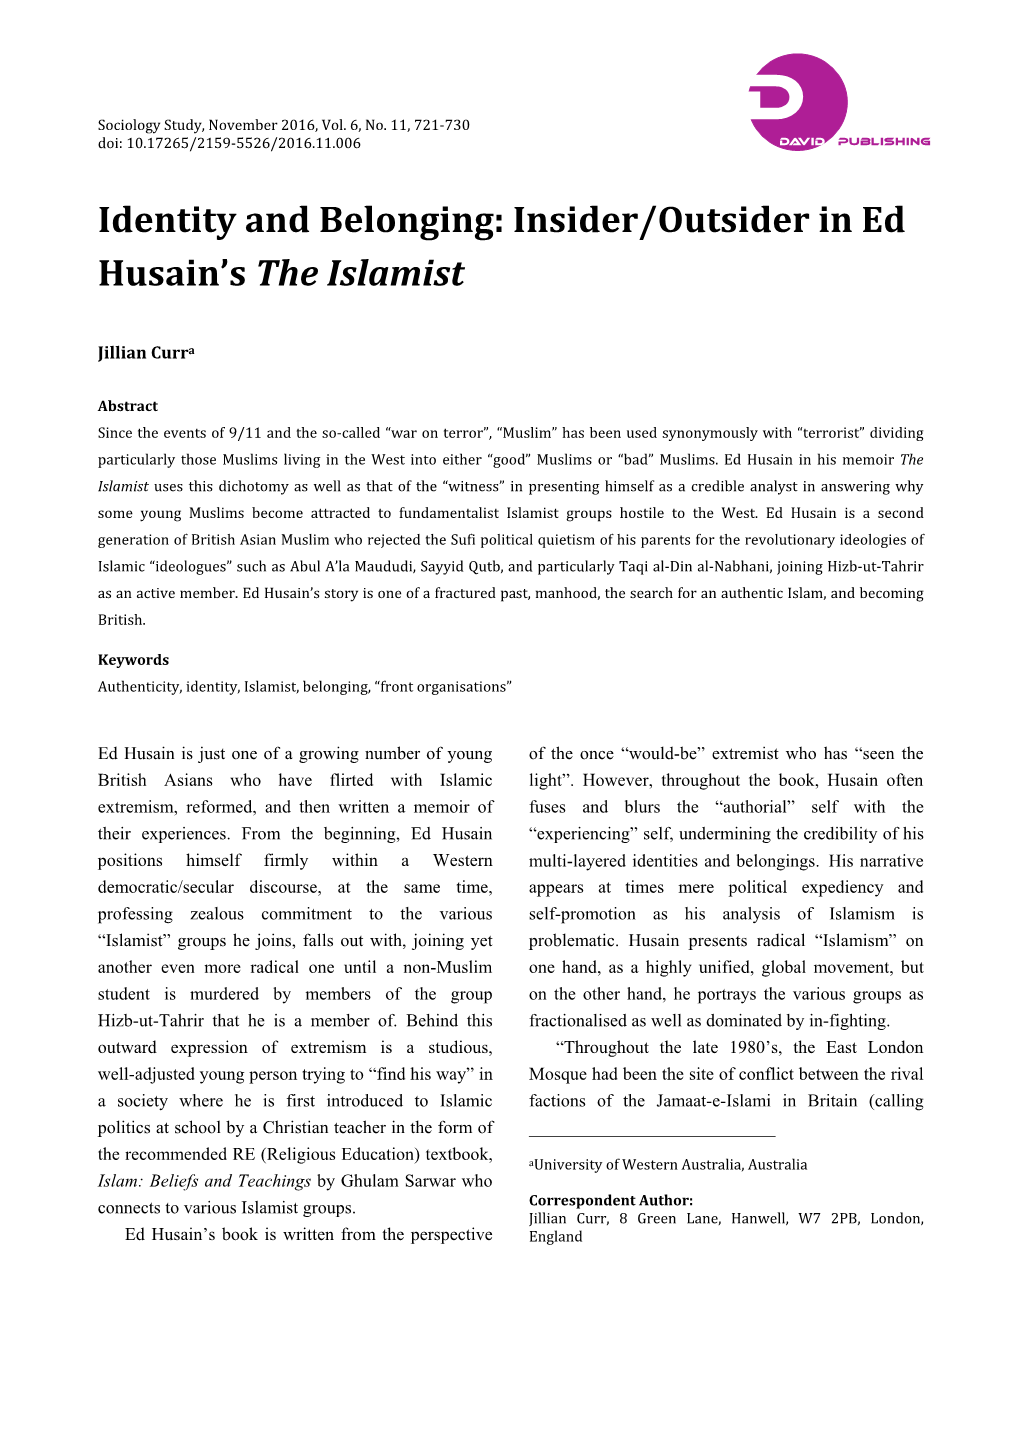 Insider/Outsider in Ed Husain's the Islamist